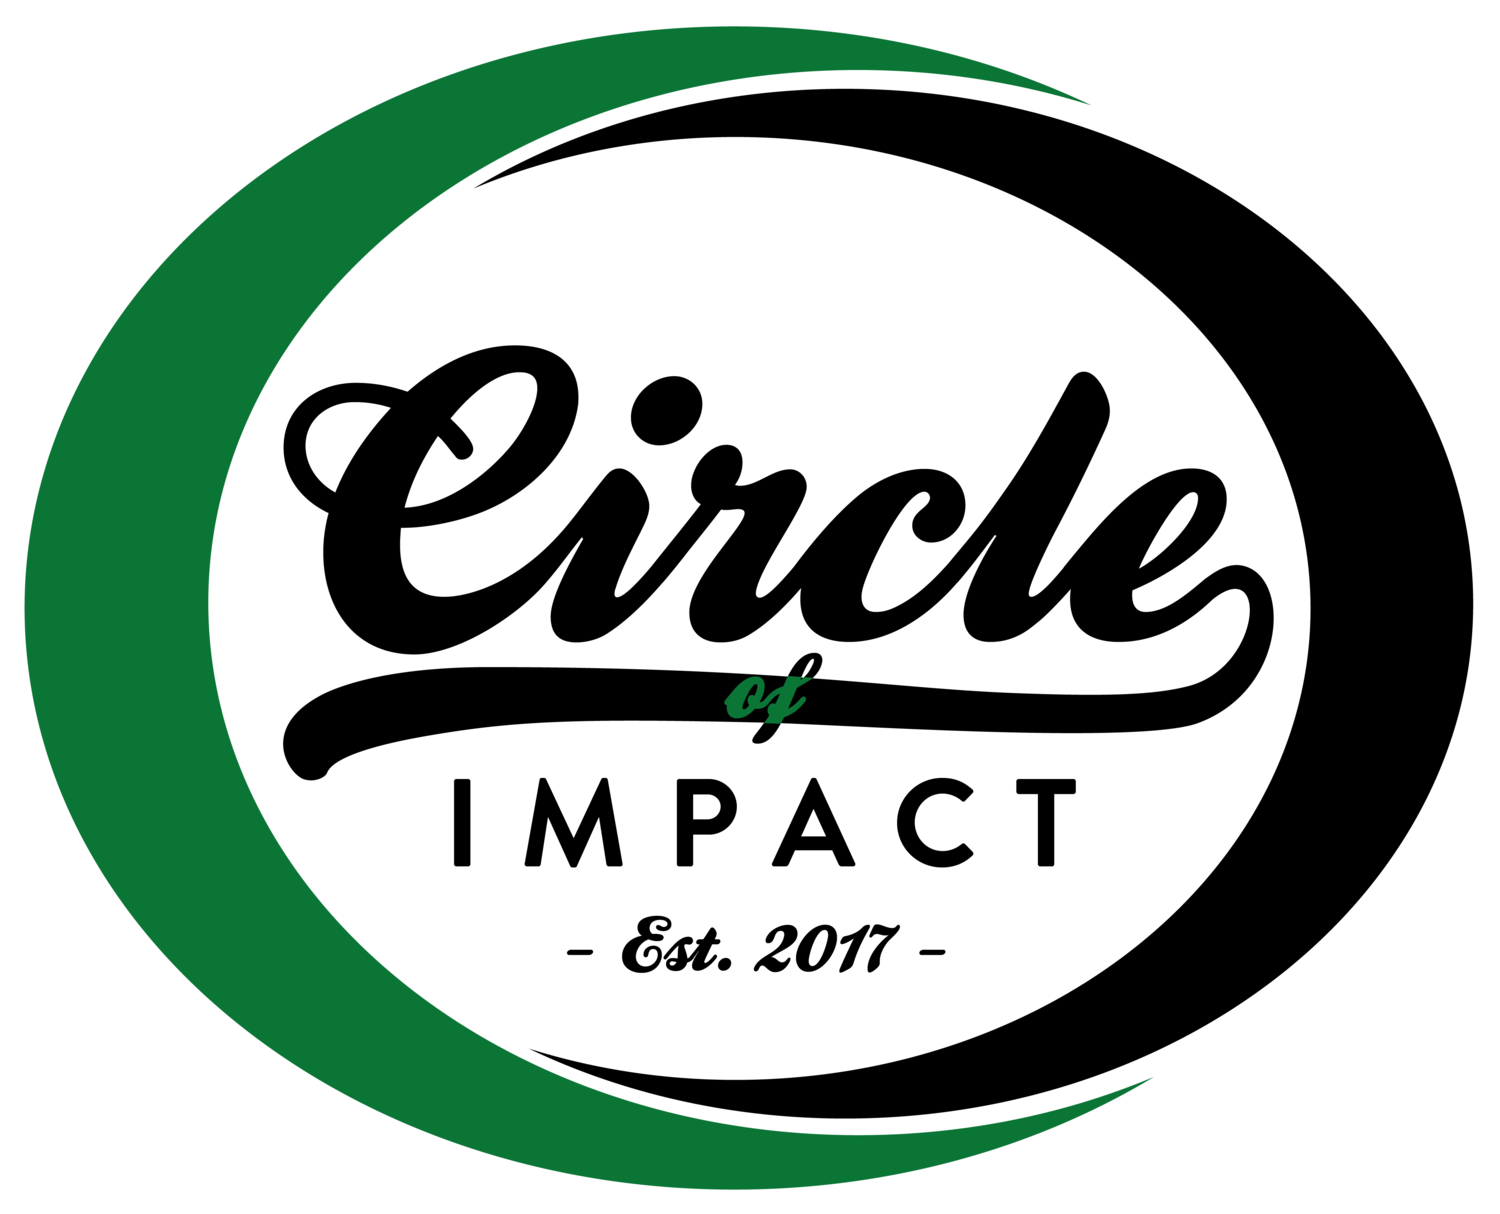 Circle of Impact